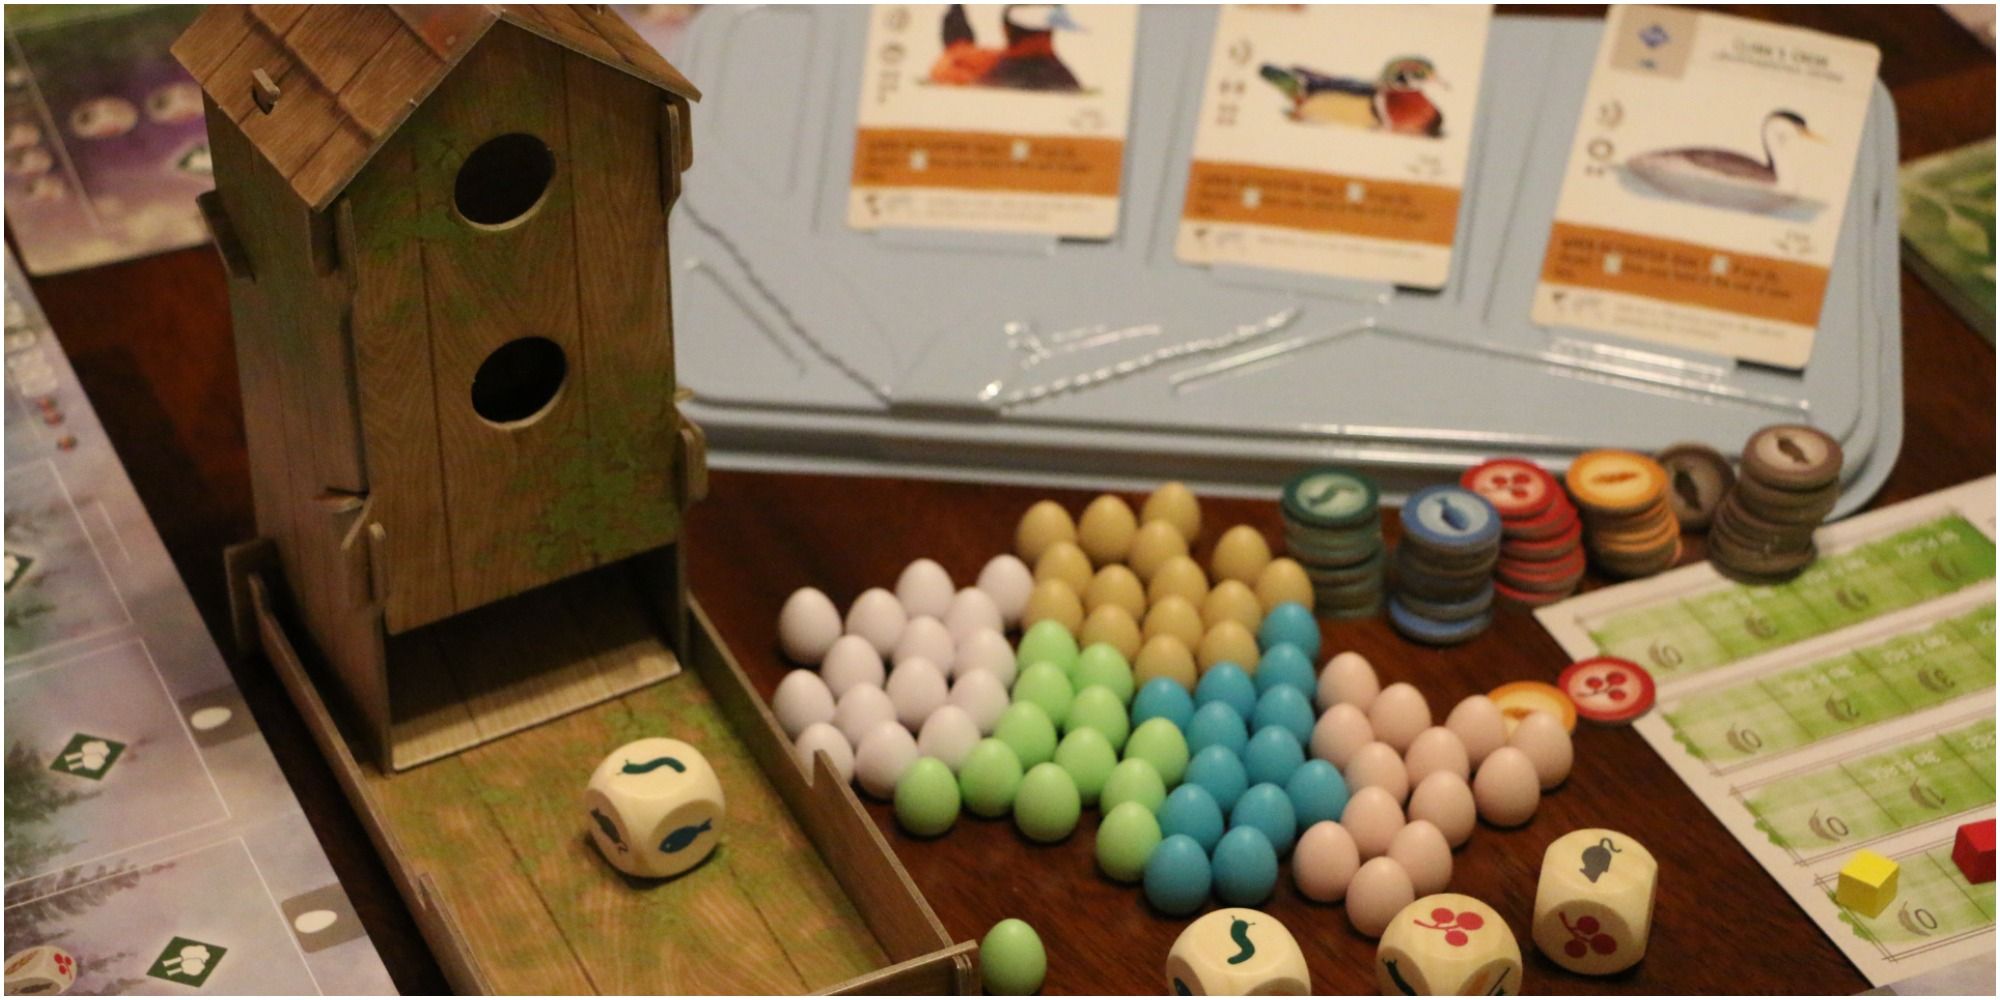 Več elementov za igro Wingspan, vključno s kockami, kartami in miniaturami jajc.